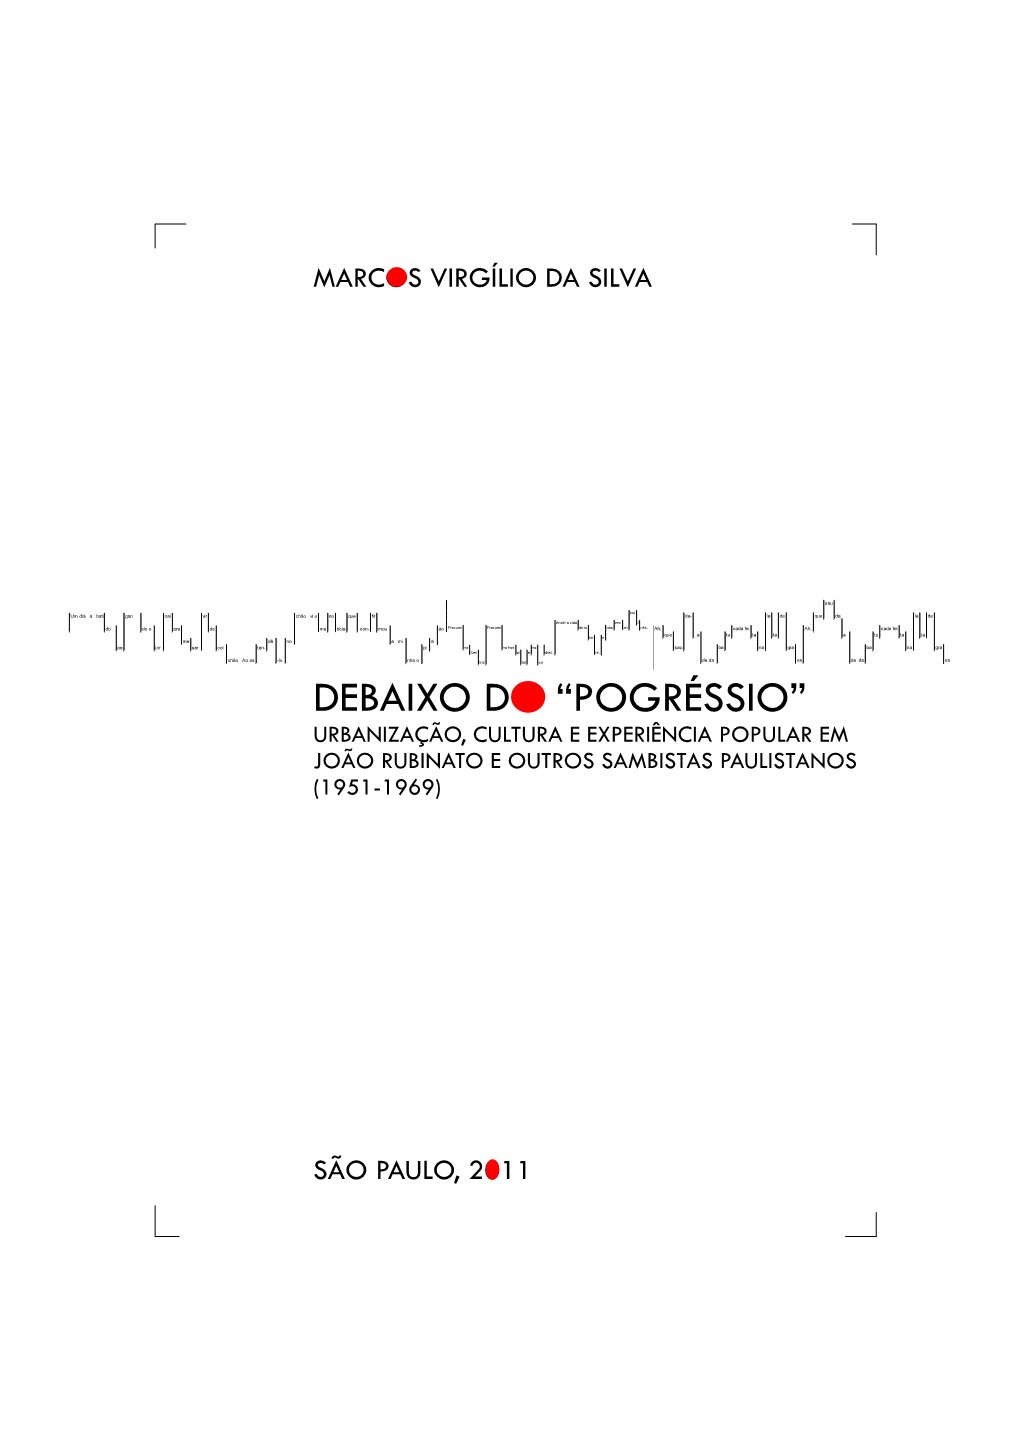 Debaixo Do “Pogréssio” Urbanização, Cultura E Experiência Popular Em João Rubinato E Outros Sambistas Paulistanos (1951-1969)